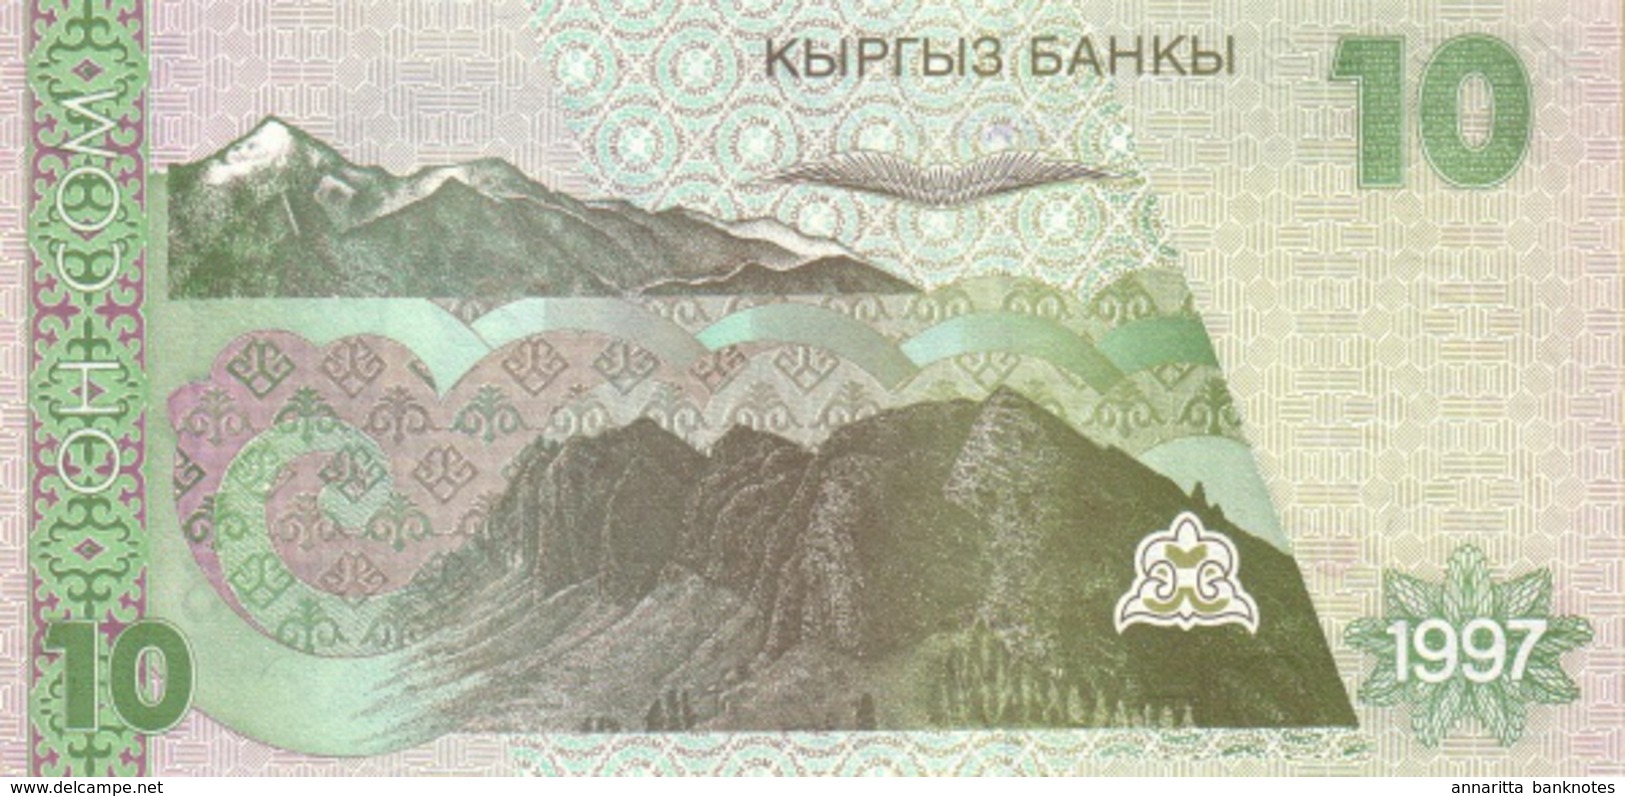 KYRGYZSTAN 10 COM (SOM) 1997 P-14 UNC [ KG212a ] - Kirgizïe